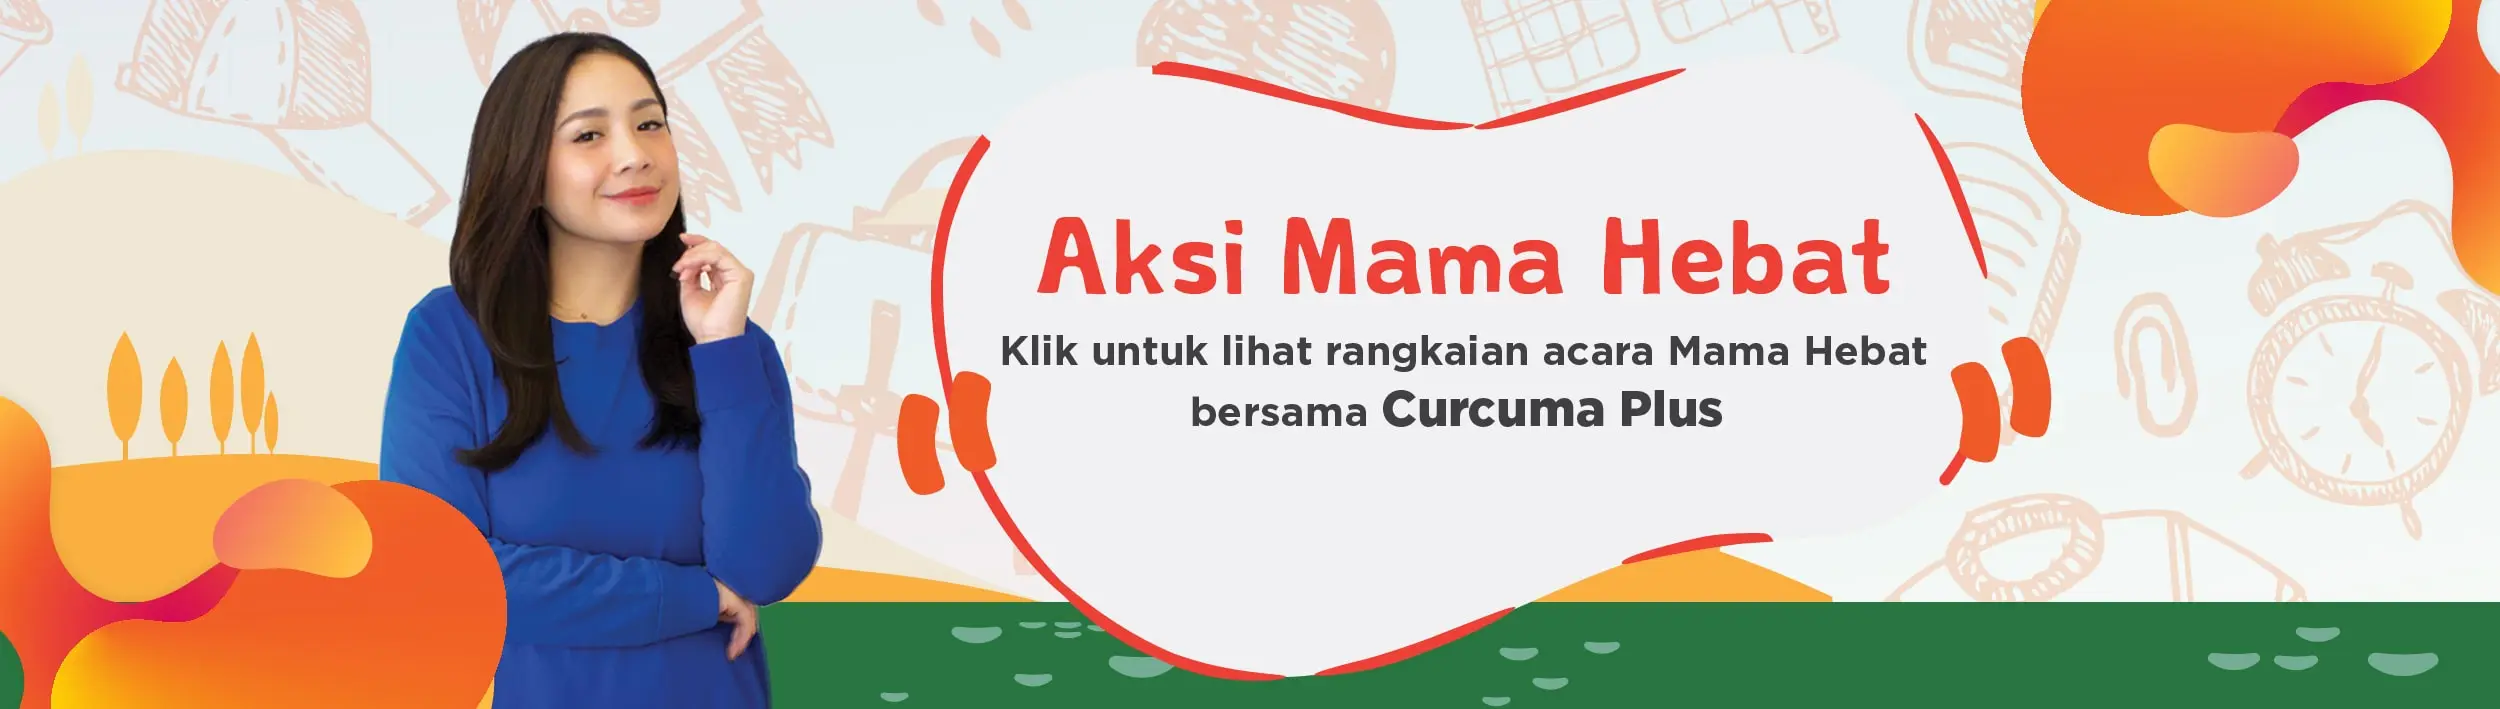 Aksi Mama Hebat - rangkaian acara mama hebat bersama curcuma plus